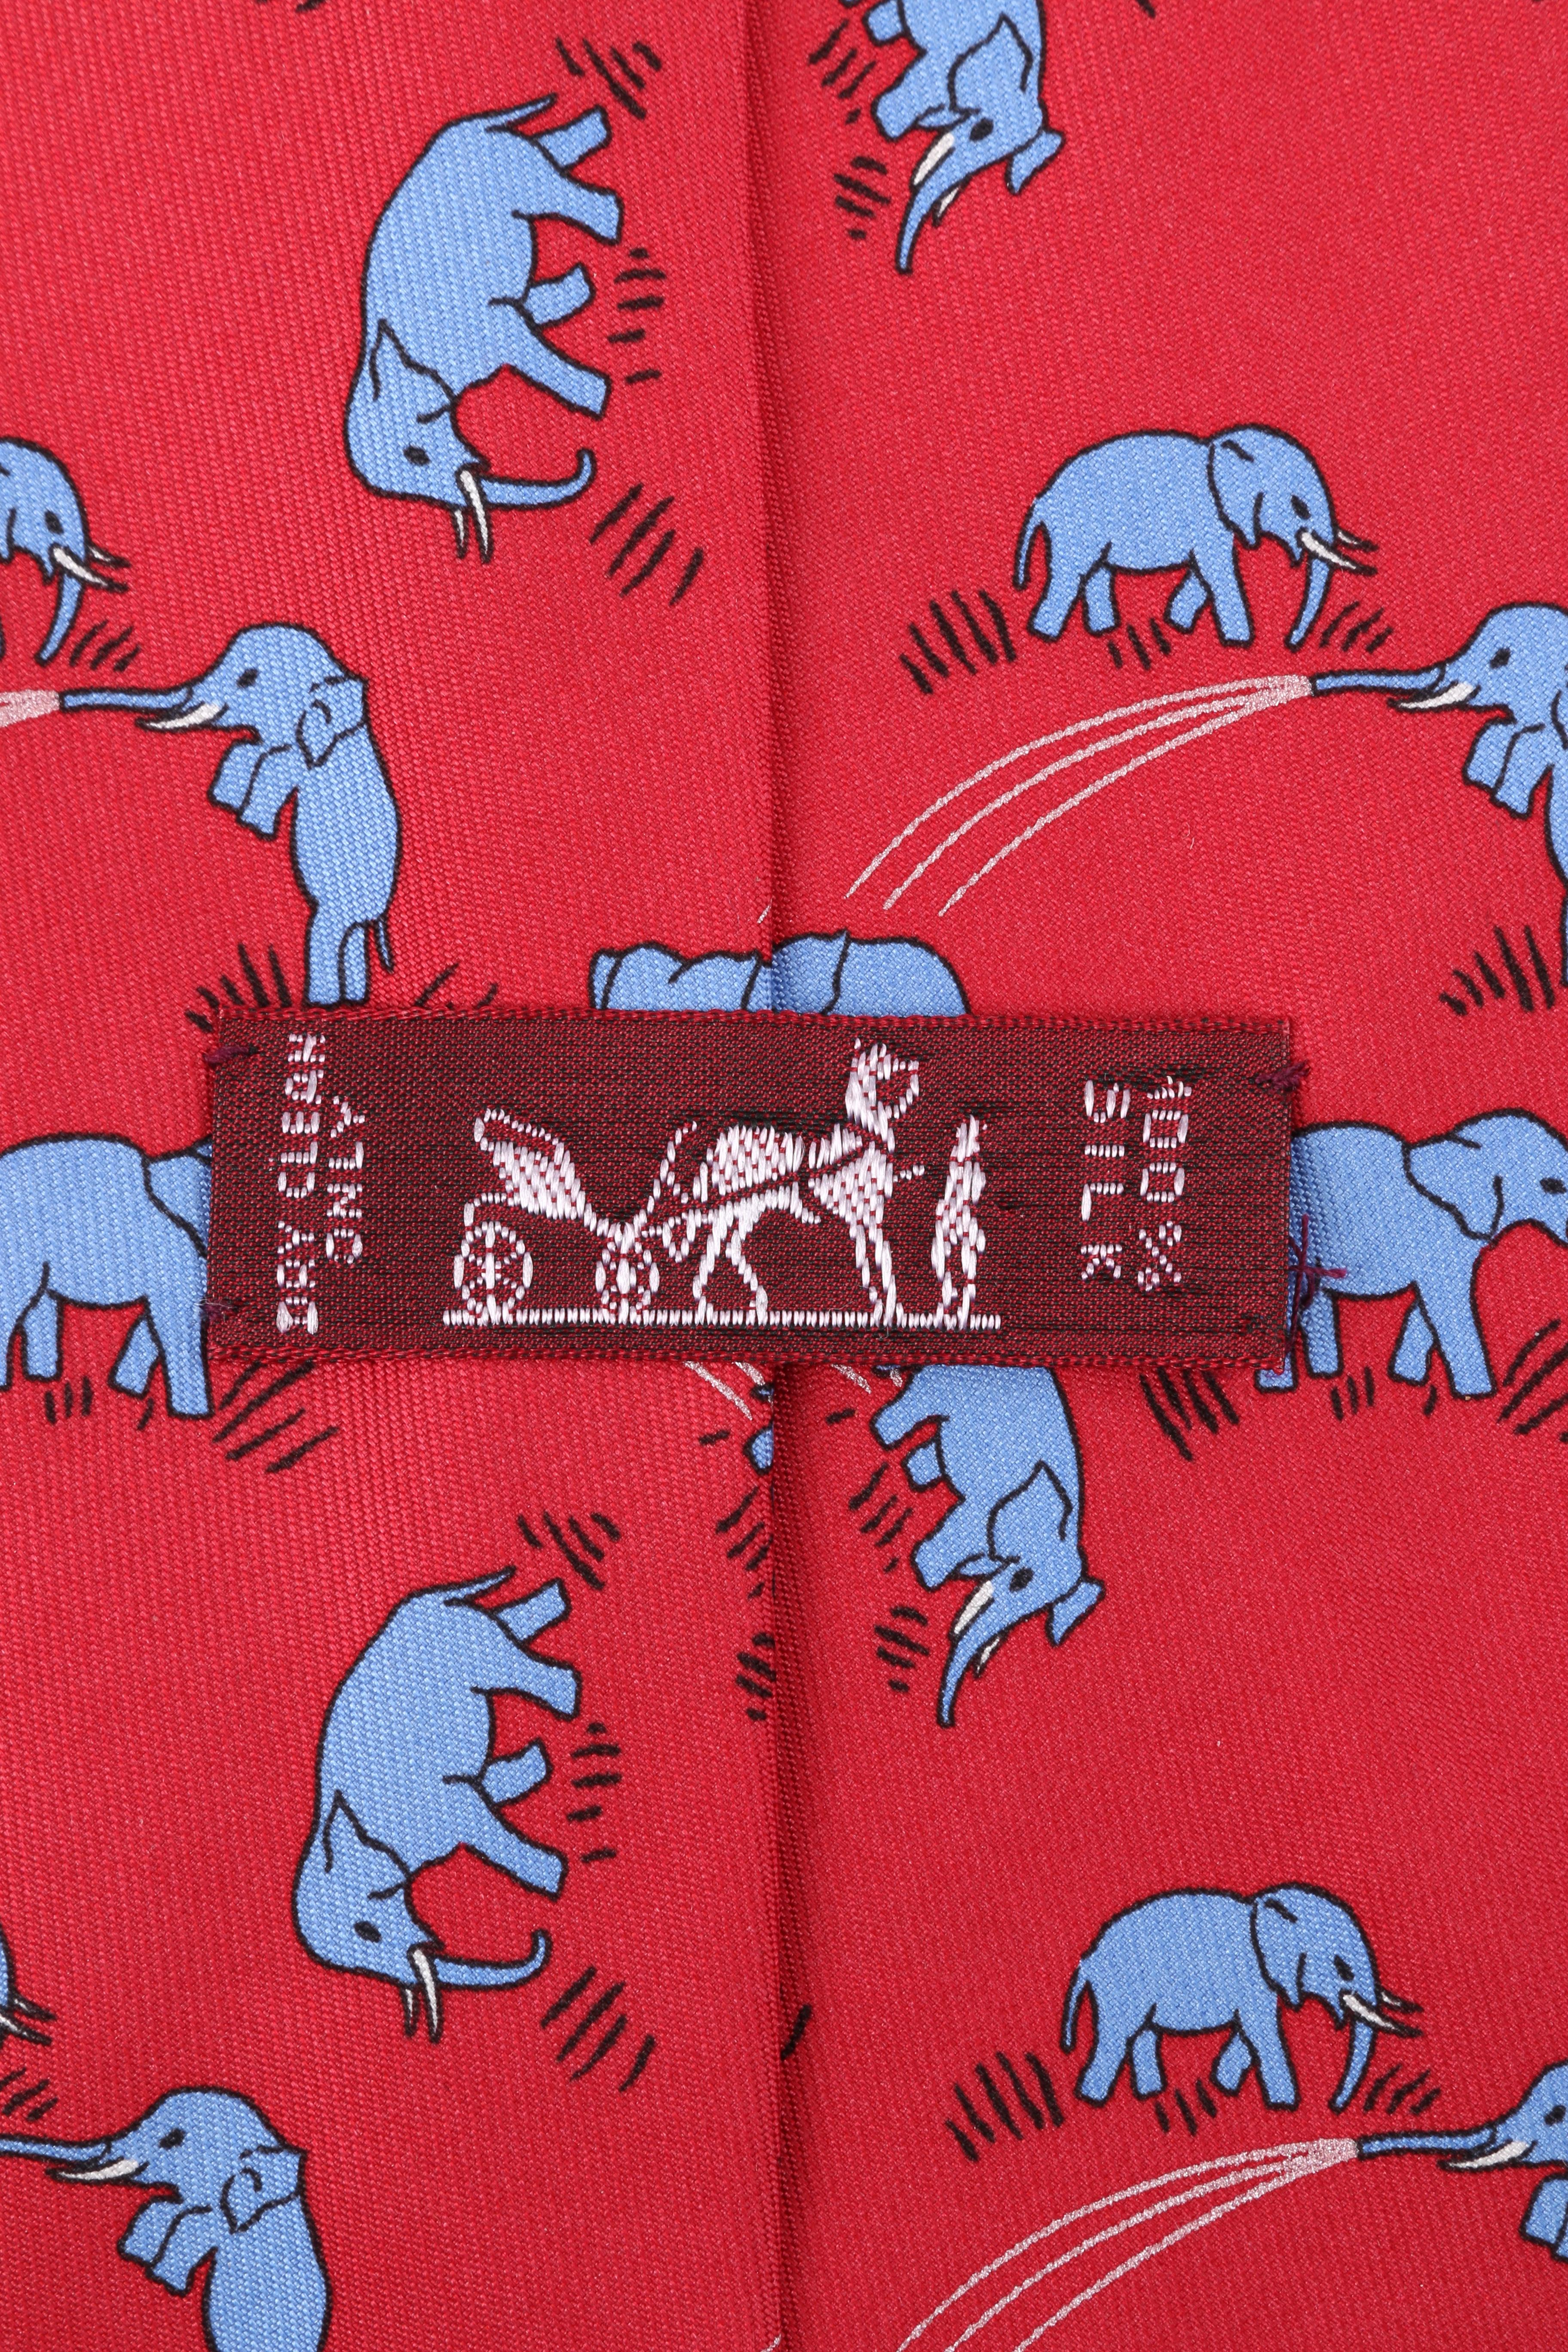 Men's HERMES Red & Blue Elephant Print 5 Fold Silk Necktie Tie 7111 OA